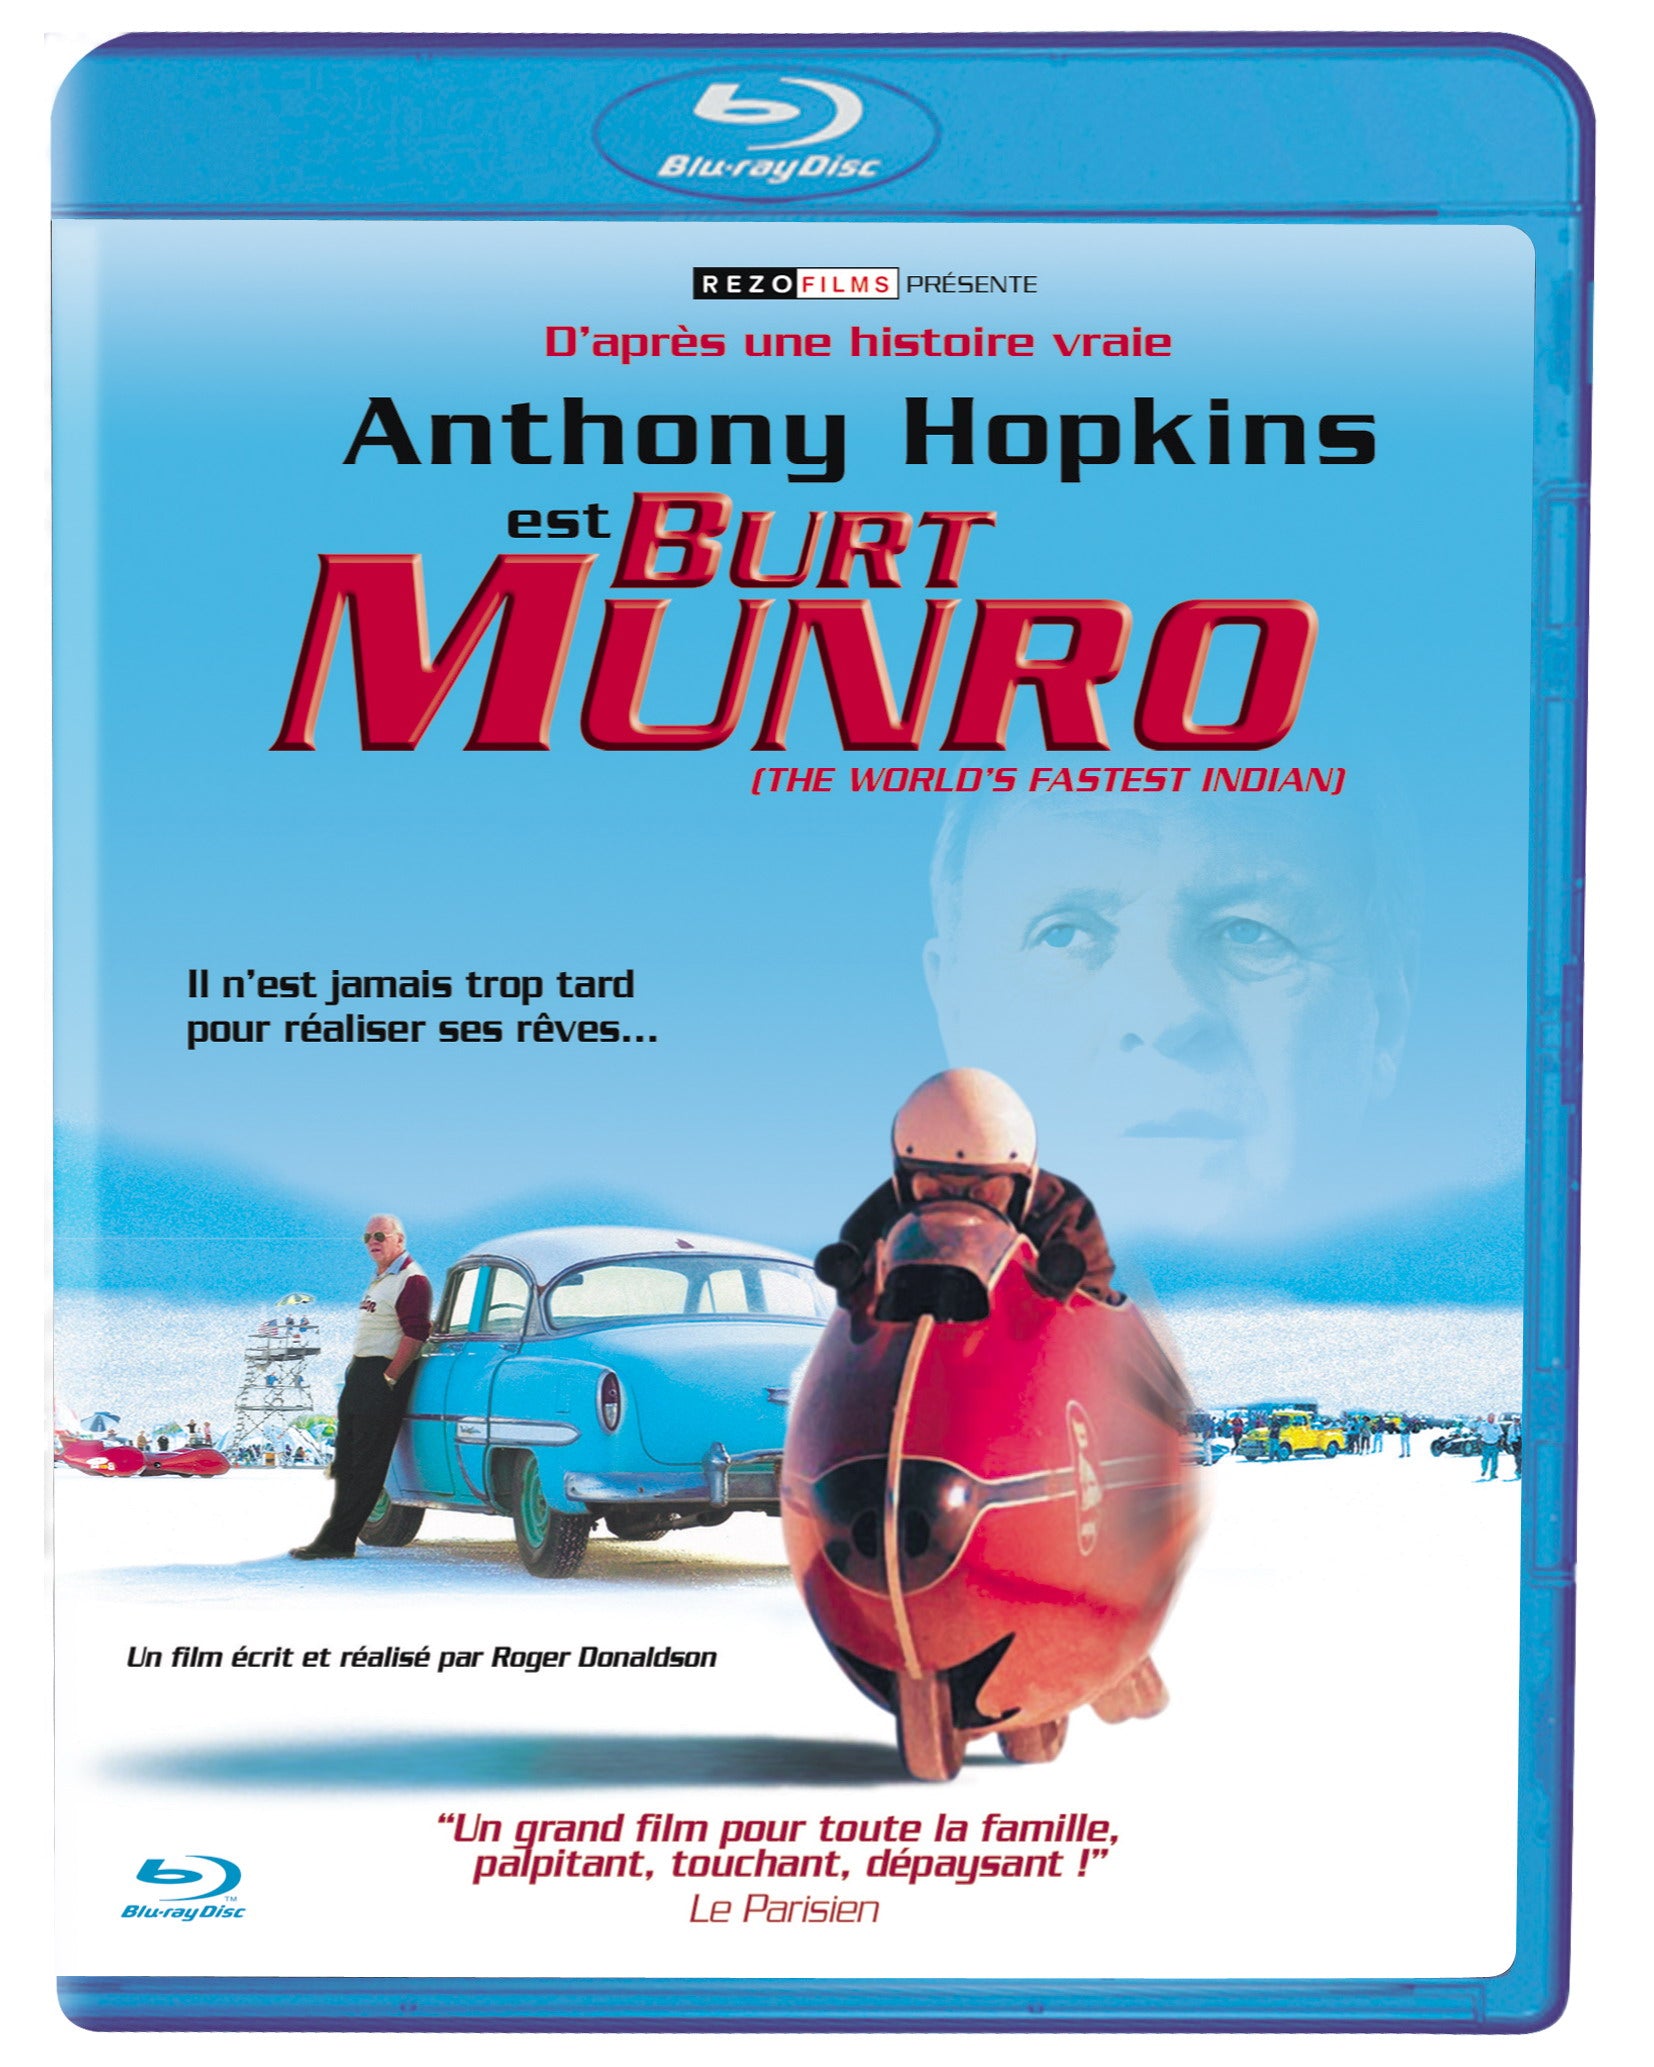 Burt Munro [Blu-ray]